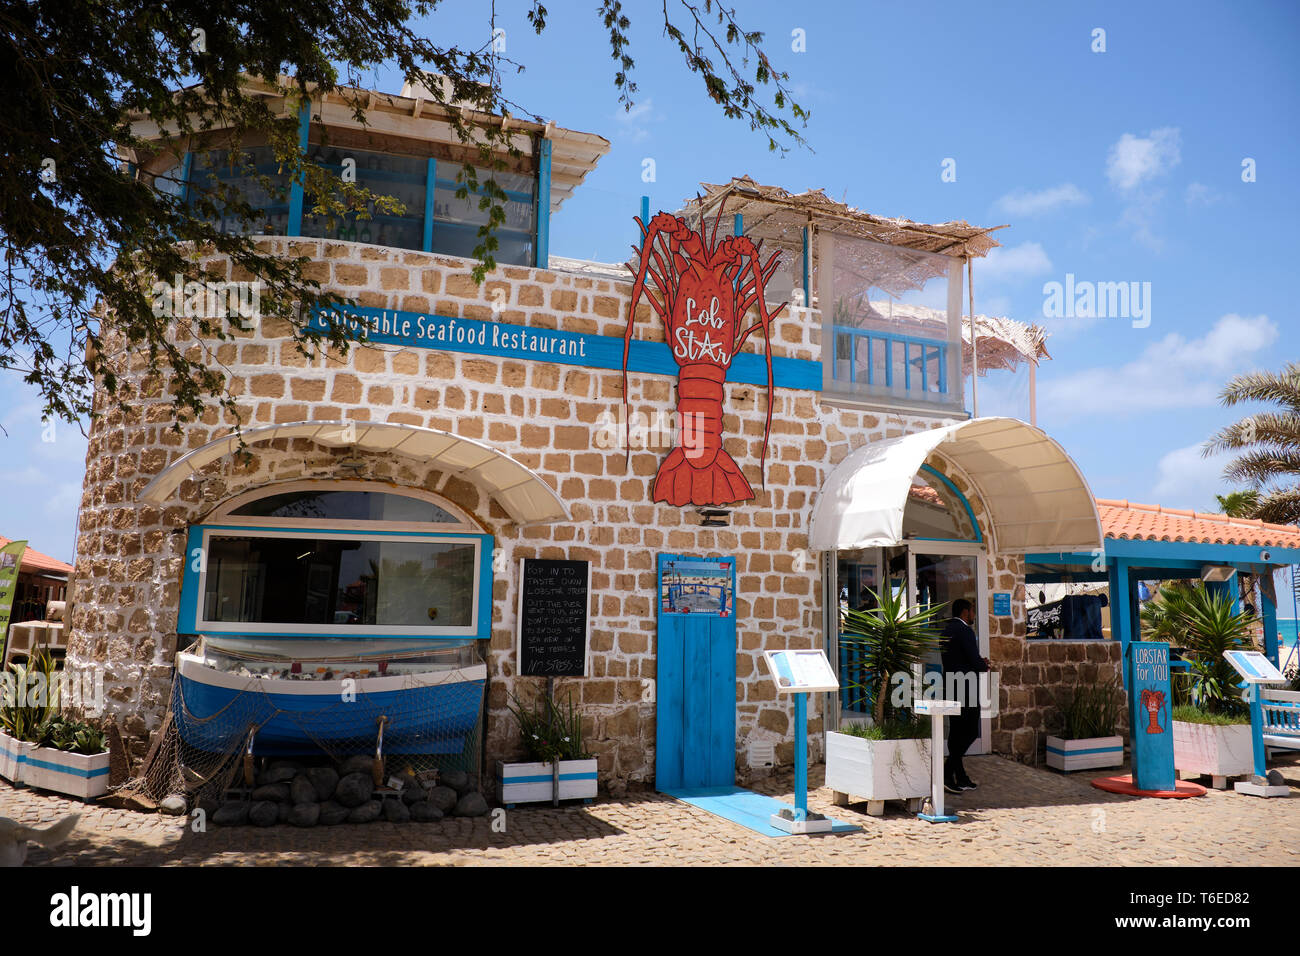 Un popular restaurante de mariscos LobStar cerca del muelle, Santa María, Isla de Sal, Cabo Verde, África Foto de stock